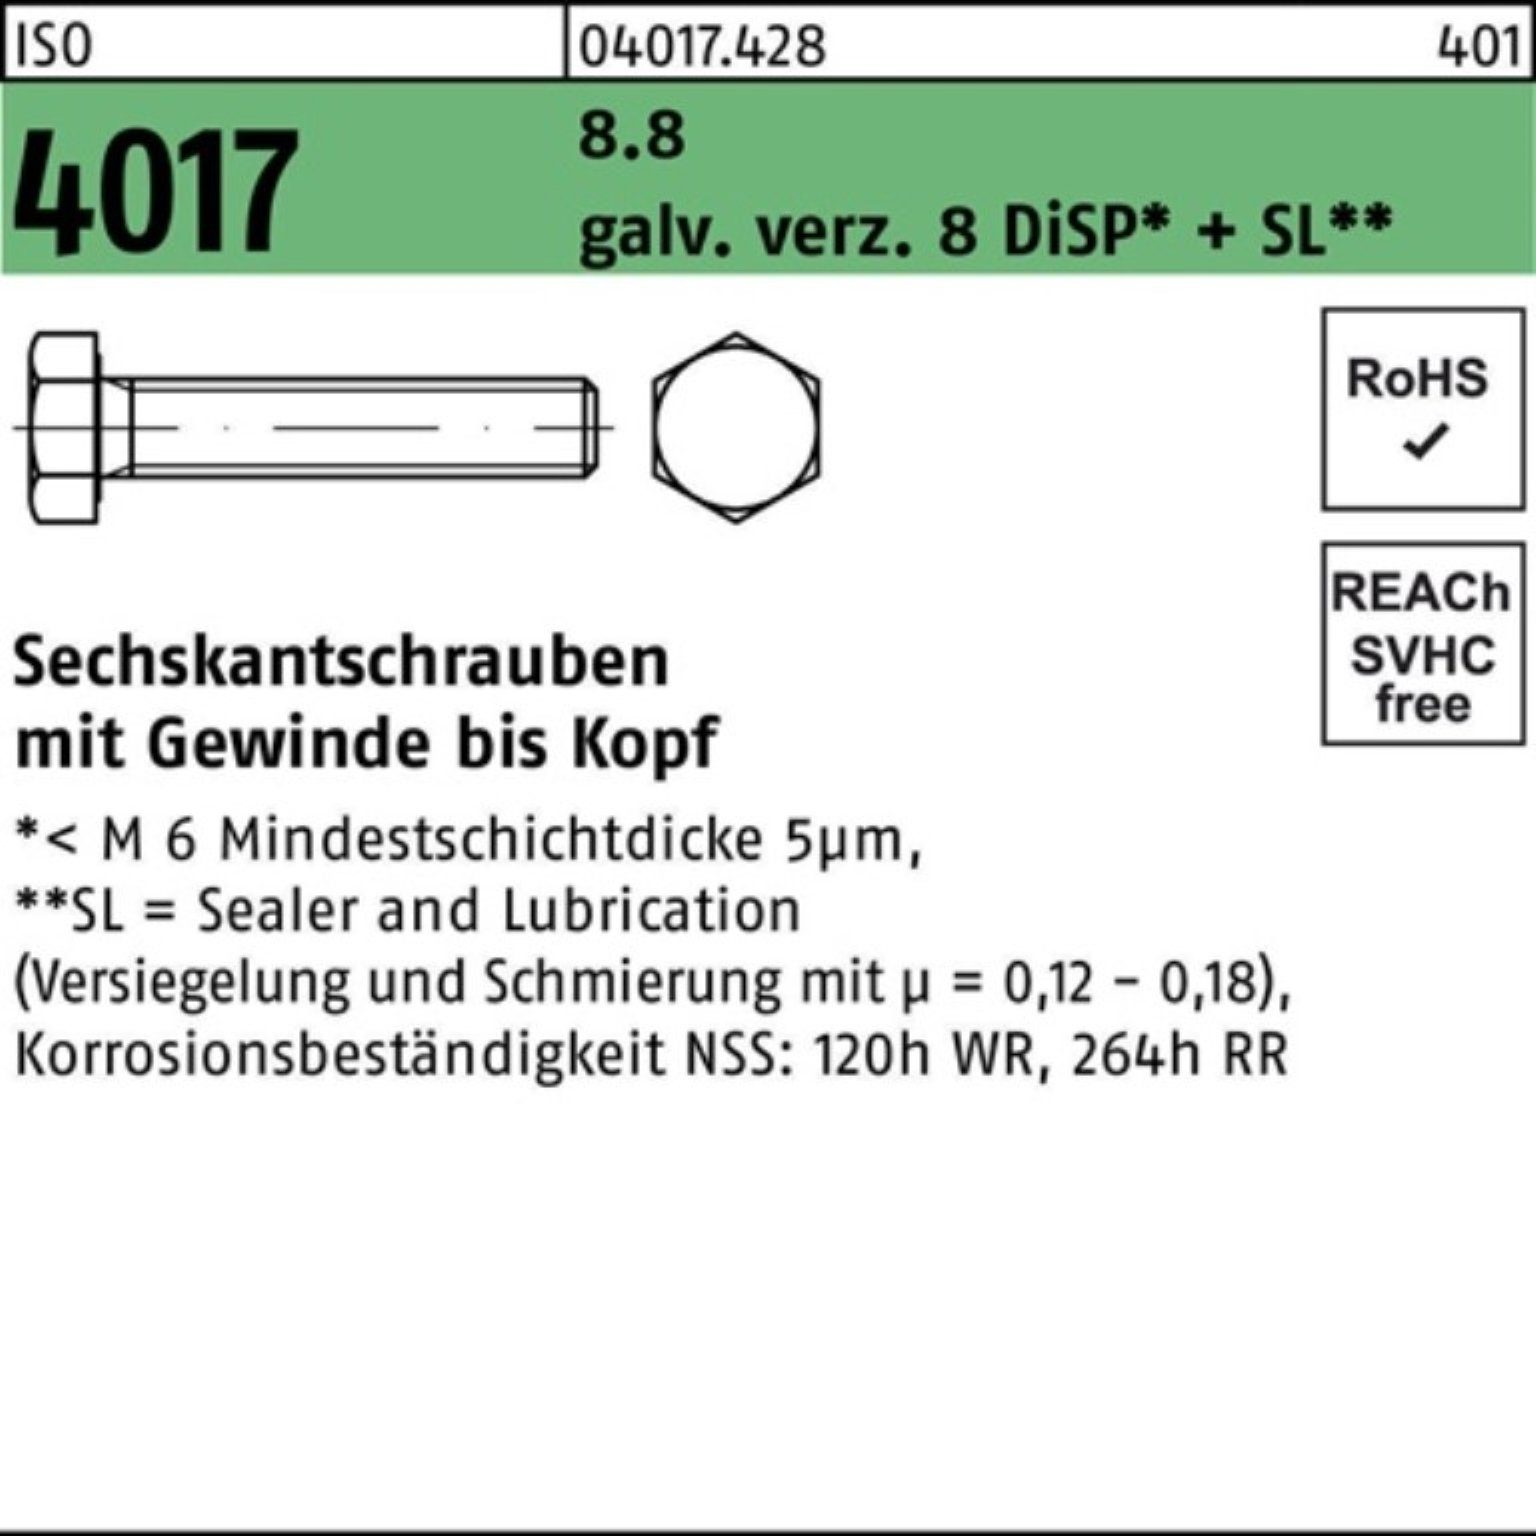 Bufab Sechskantschraube VG 4017 Sechskantschraube 8.8 12 ISO M4x 500er Pack galv.verz. 8 DiSP+